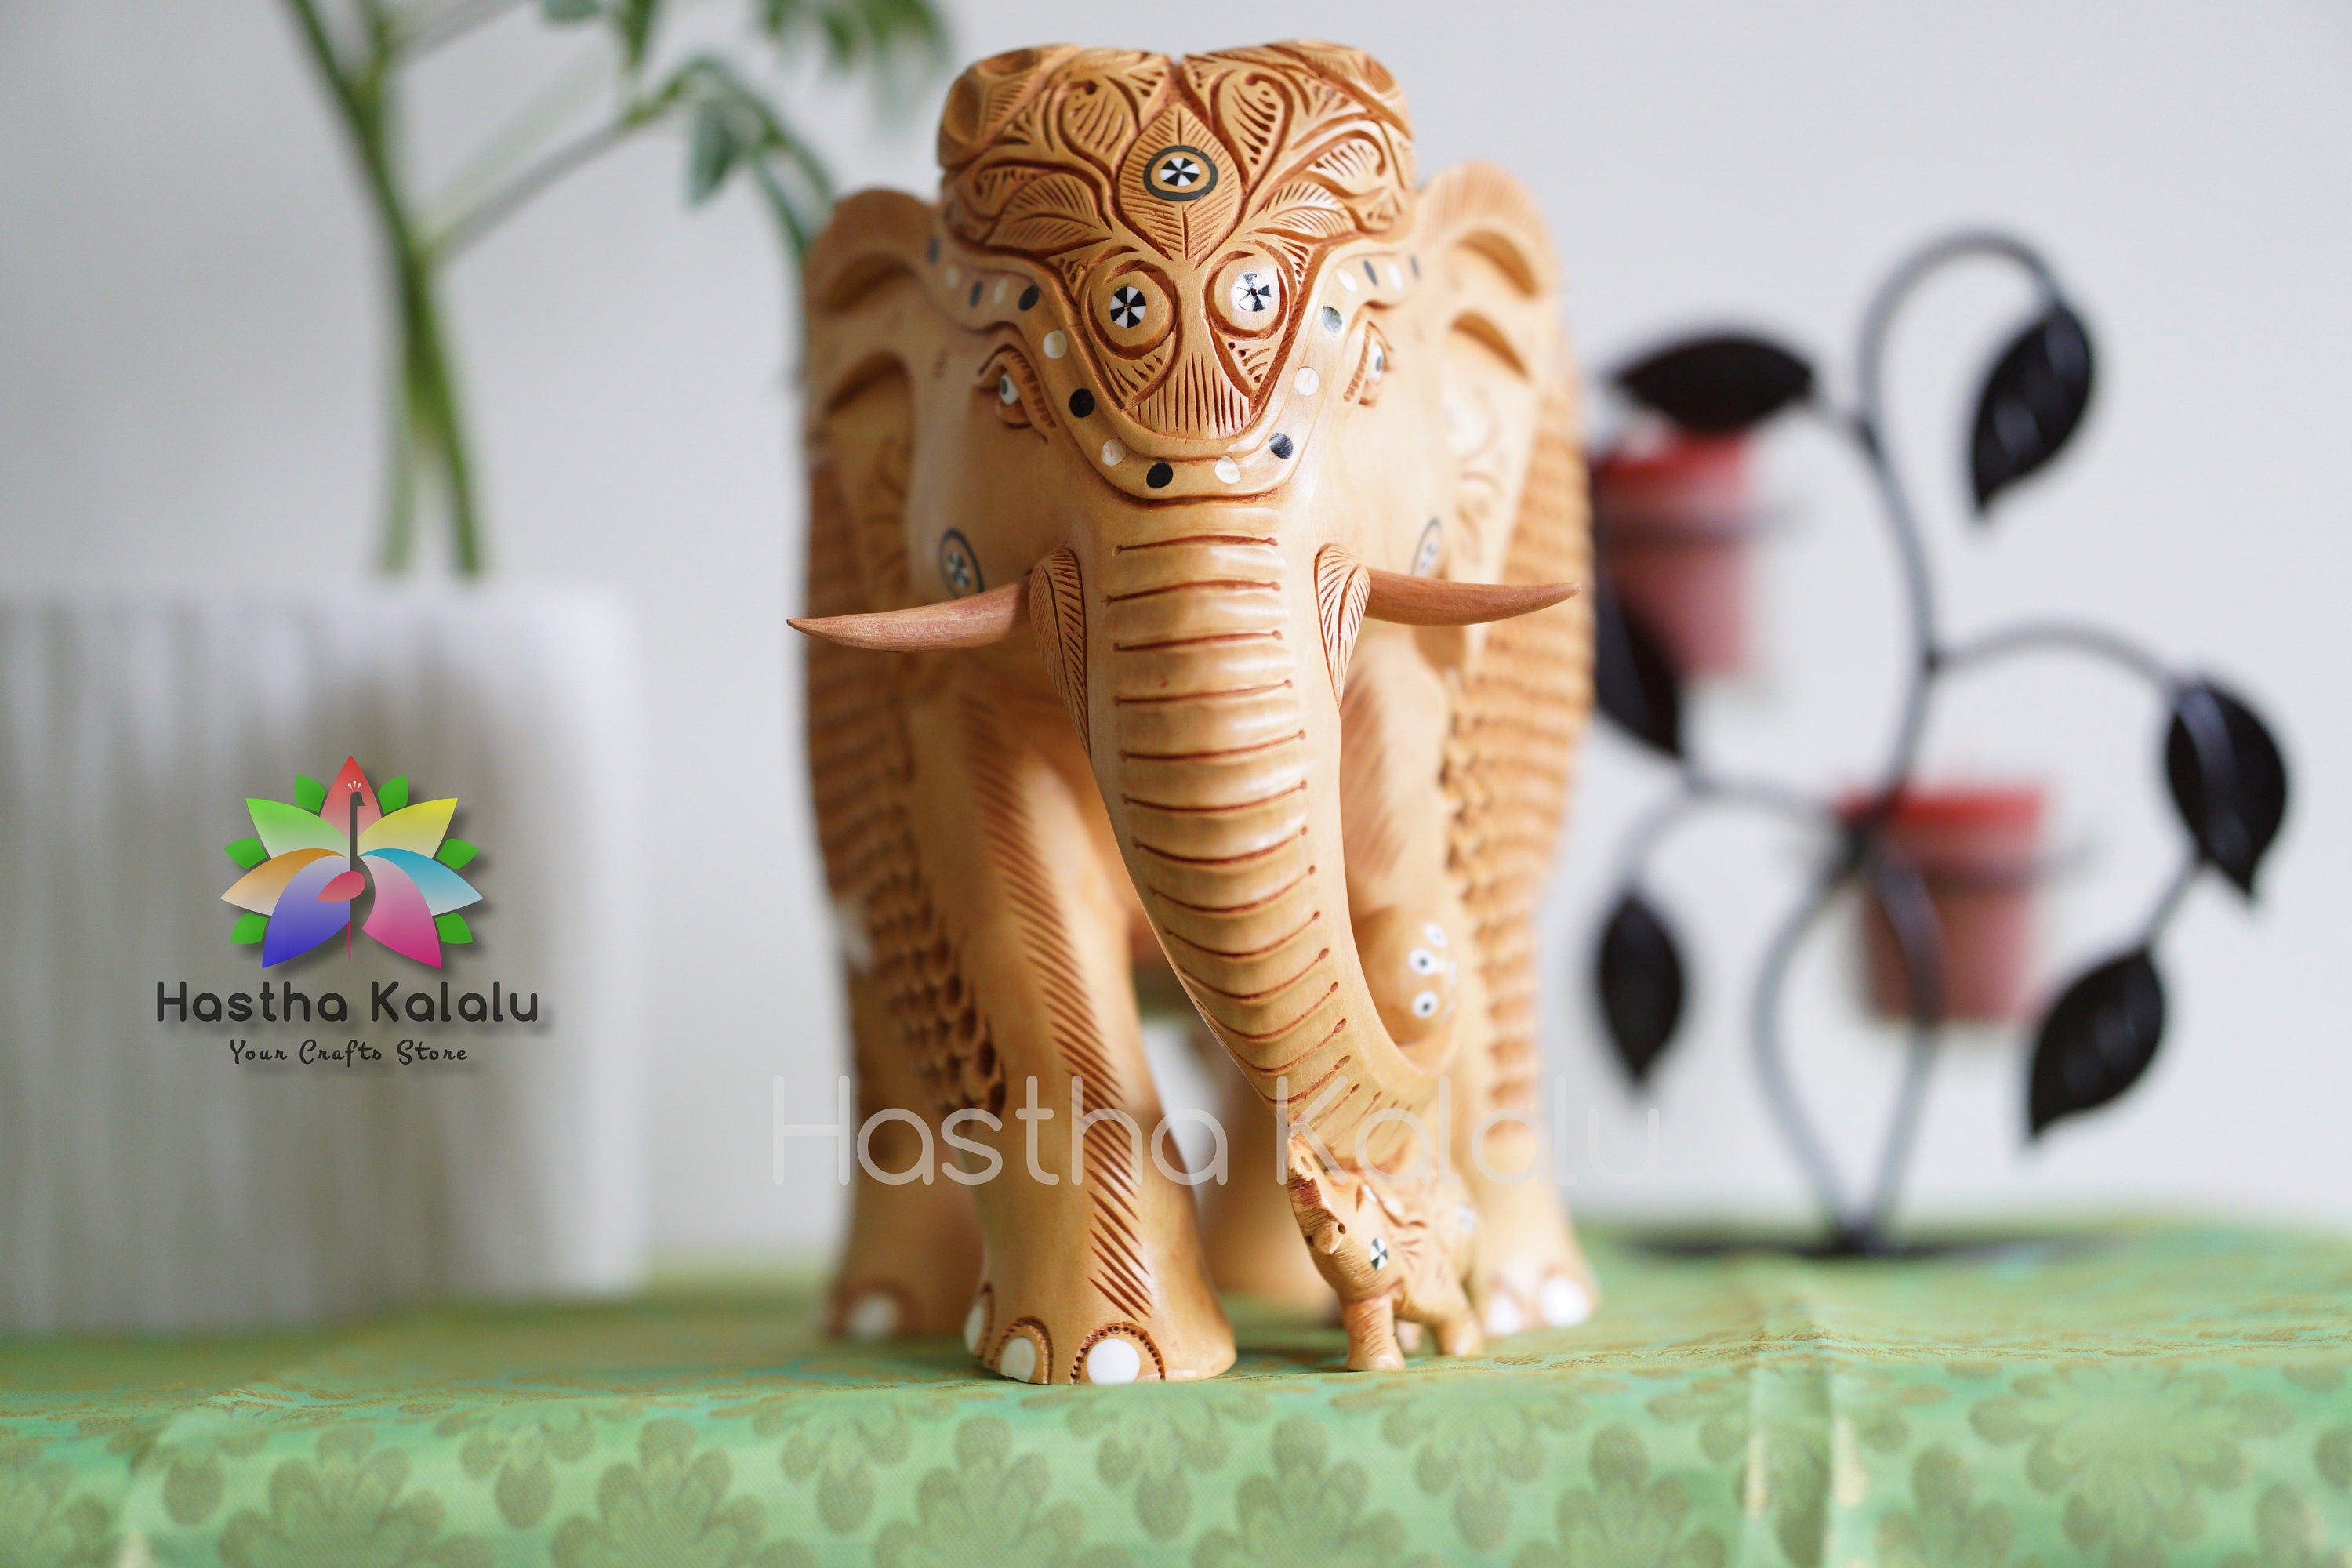 Handmade Undercut Wood Carved Stone Studded Elephant Figurine